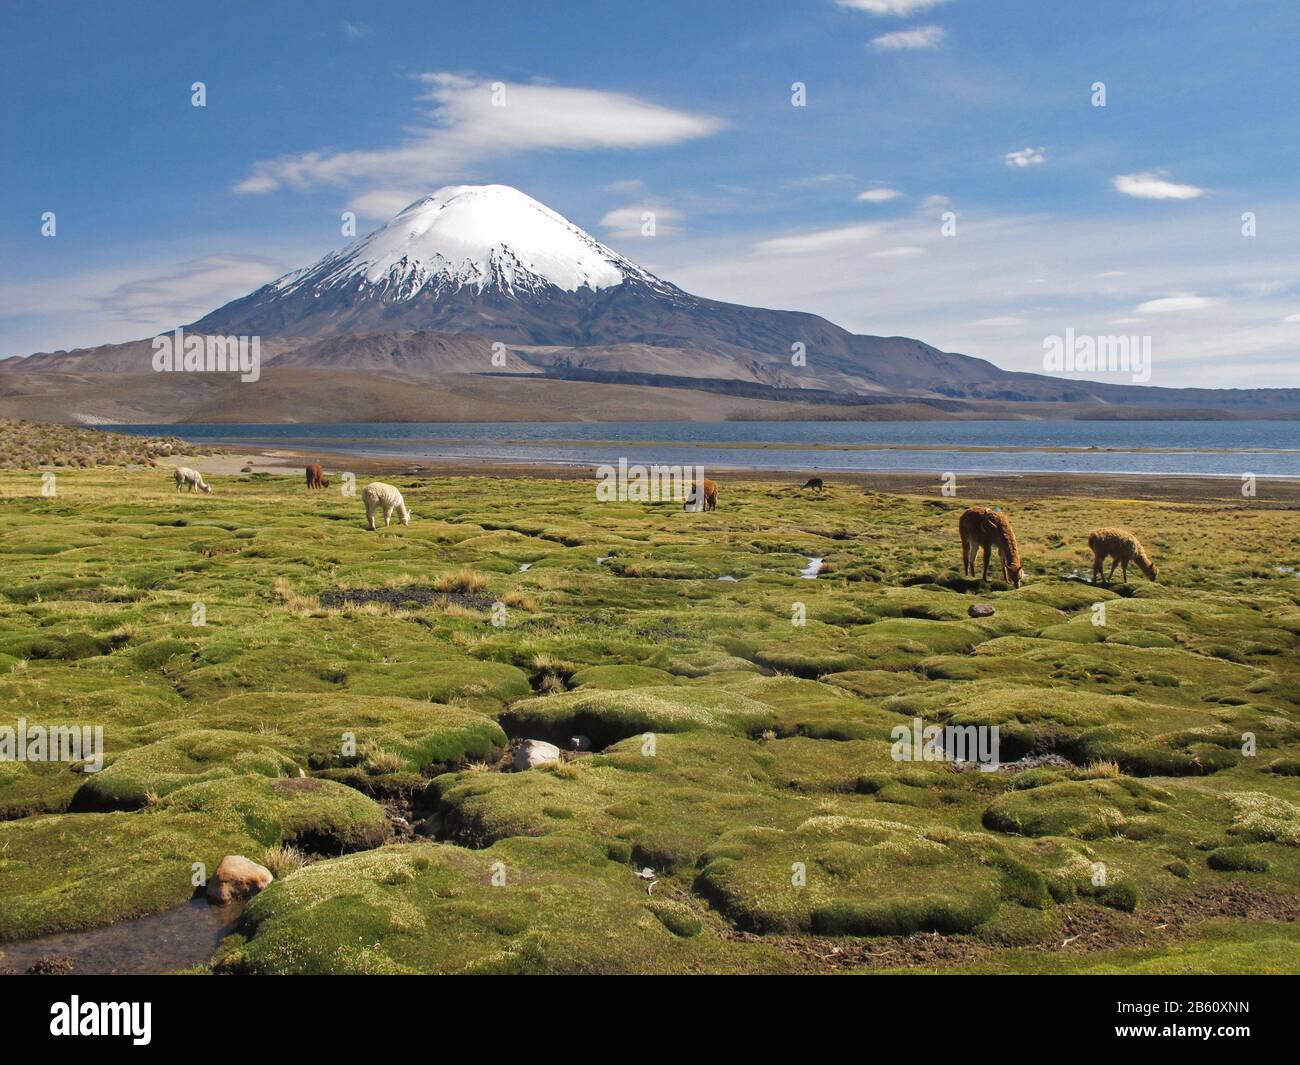 Volcano Parinacota et alpacas paissent au Chili Banque D'Images